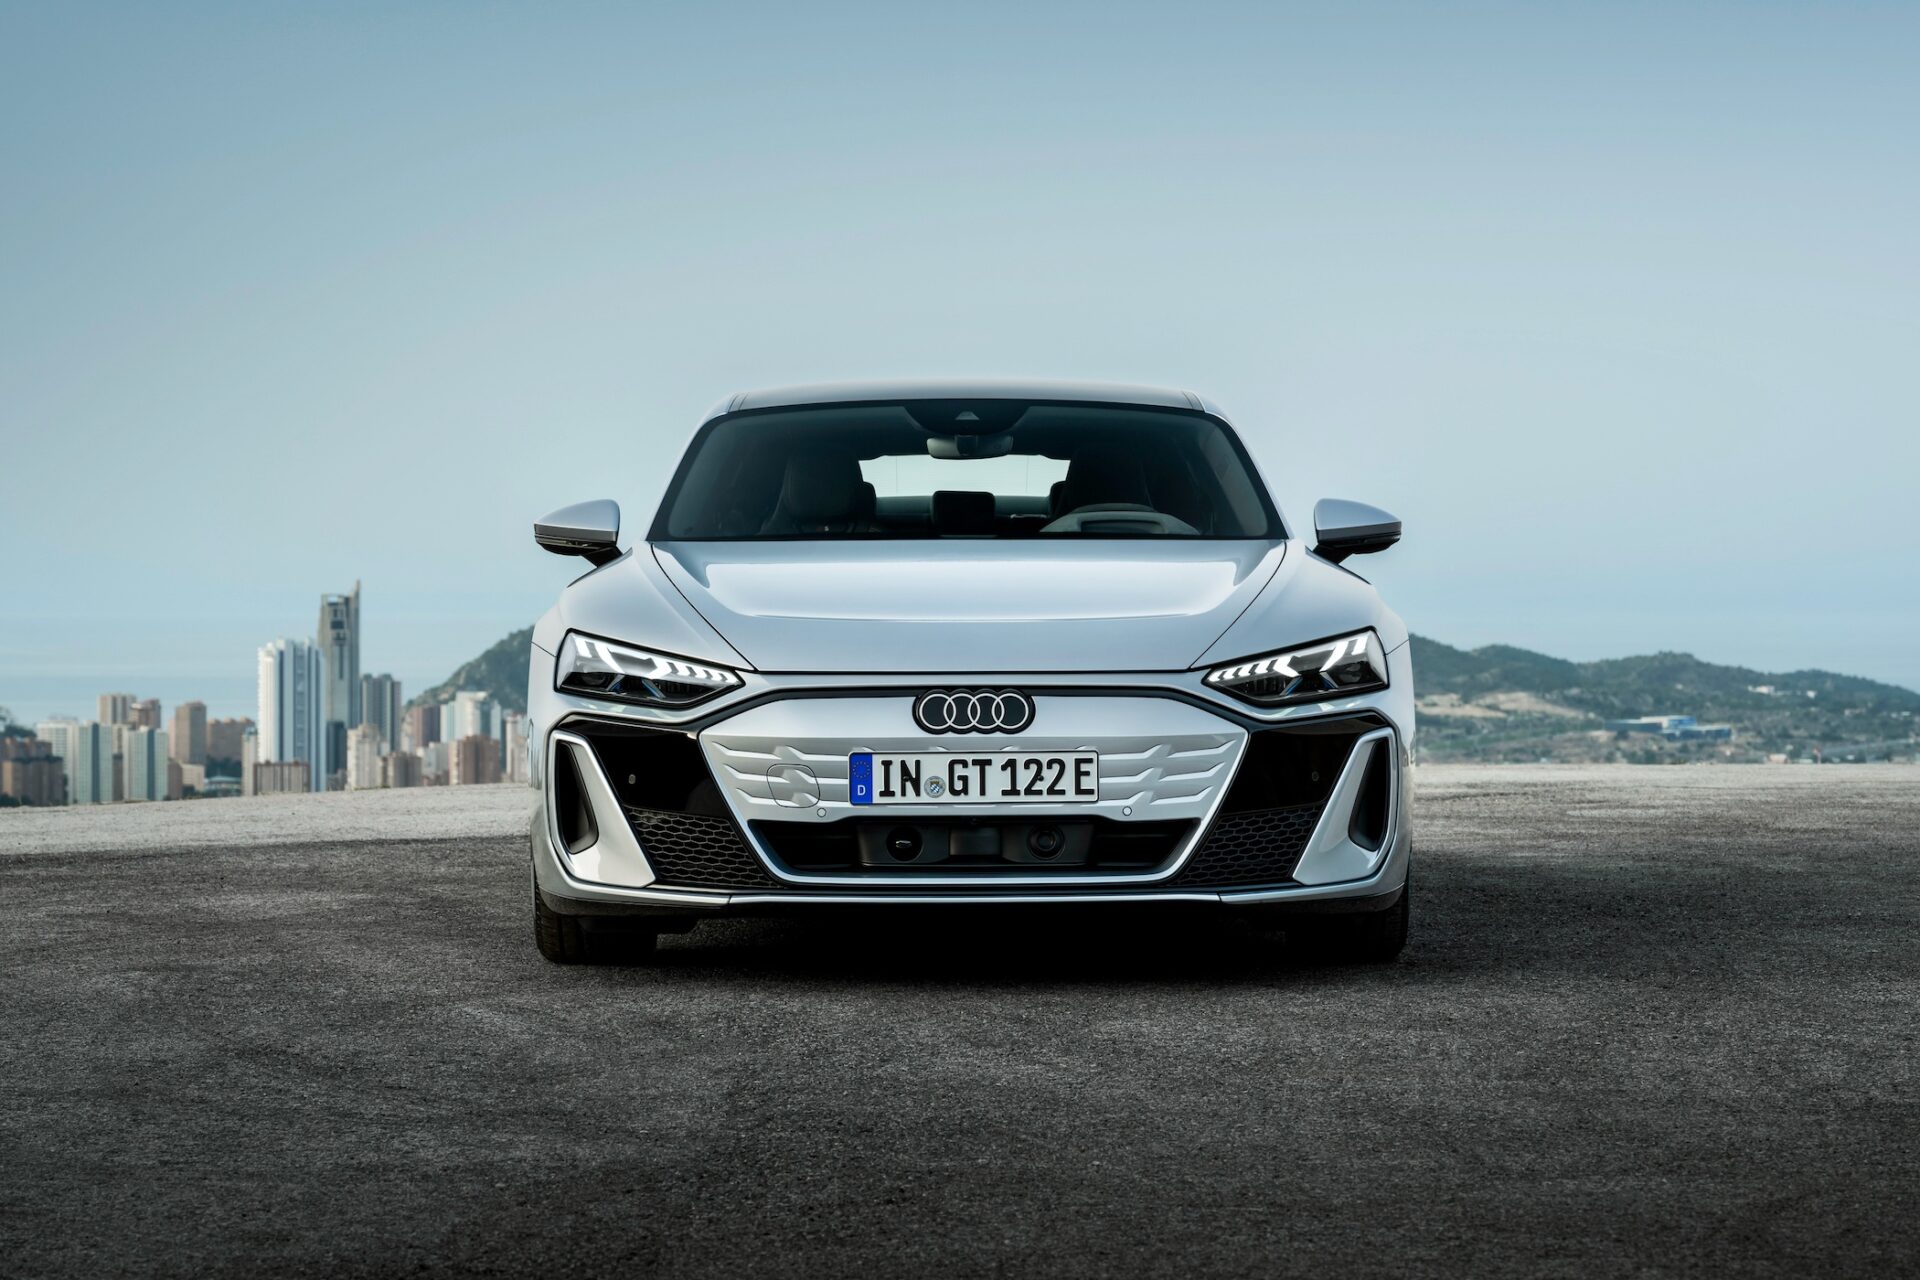 Frontal vy av en silverfärgad Audi e-tron GT med en stad i bakgrunden